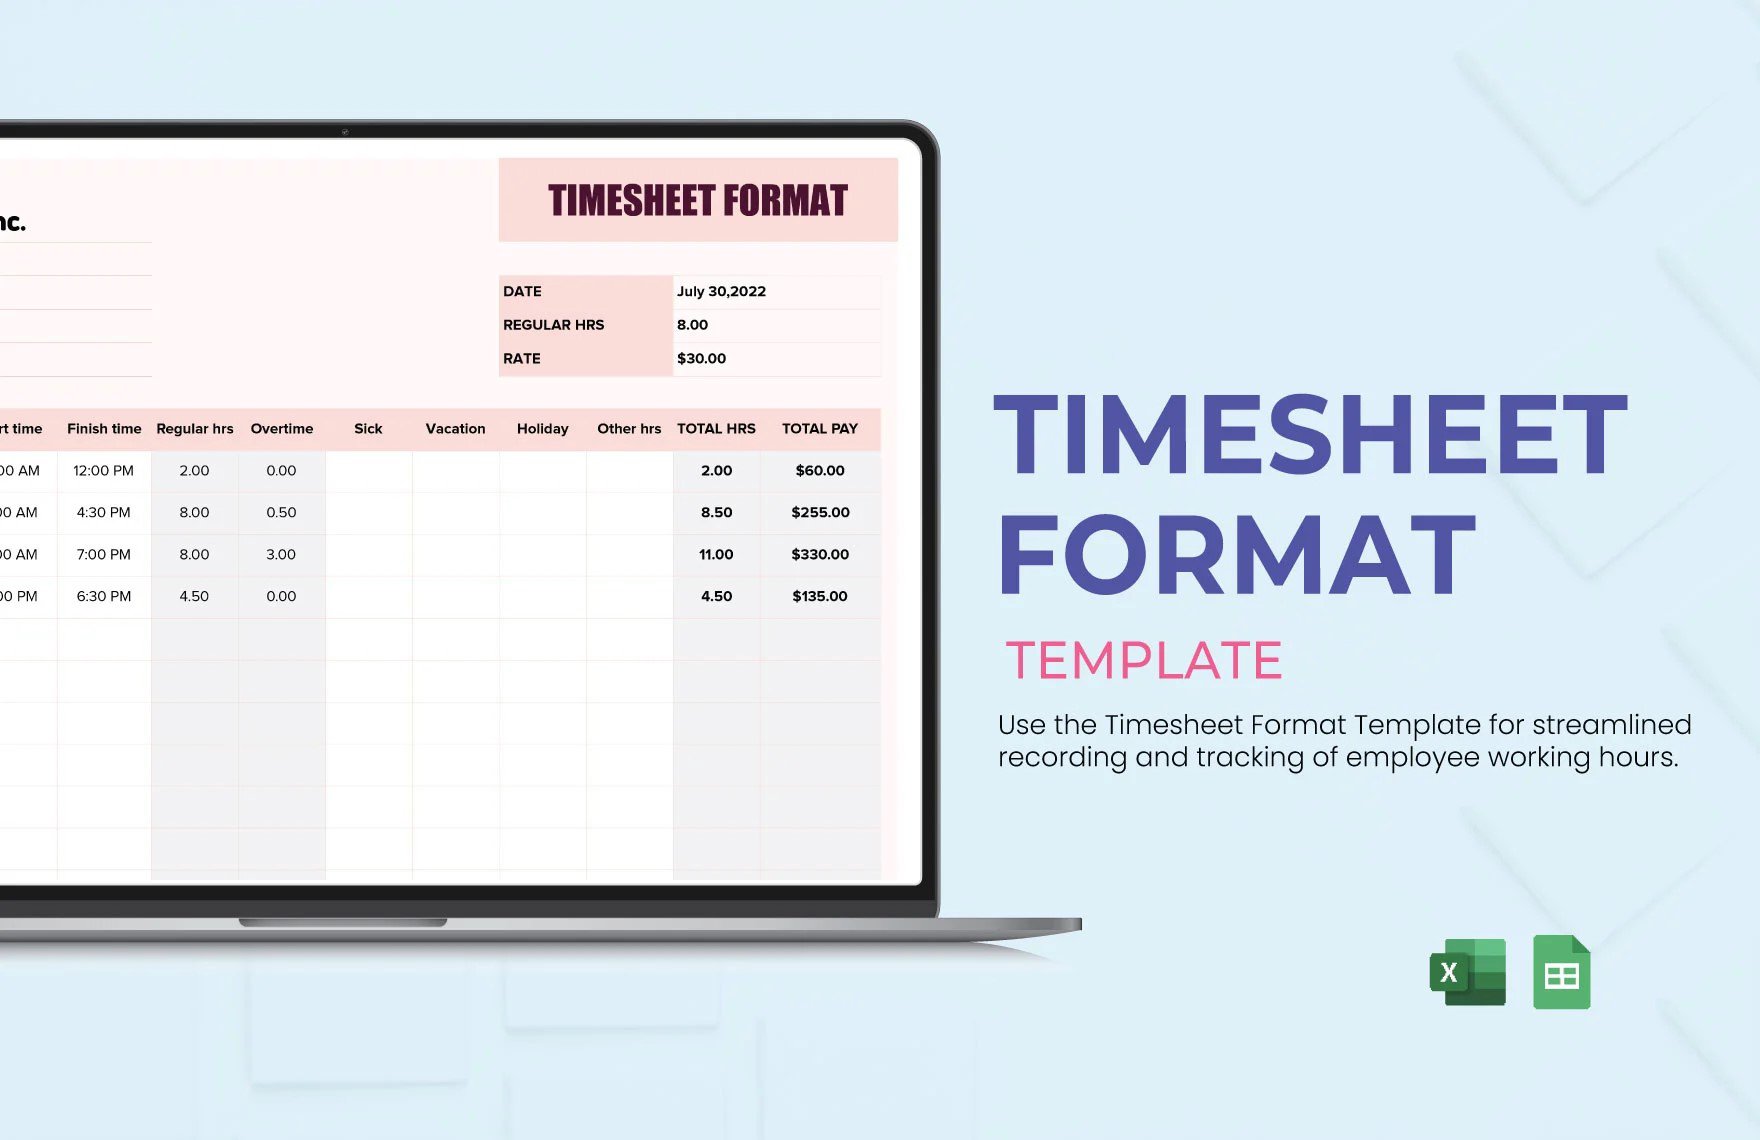 Timesheet Format Template